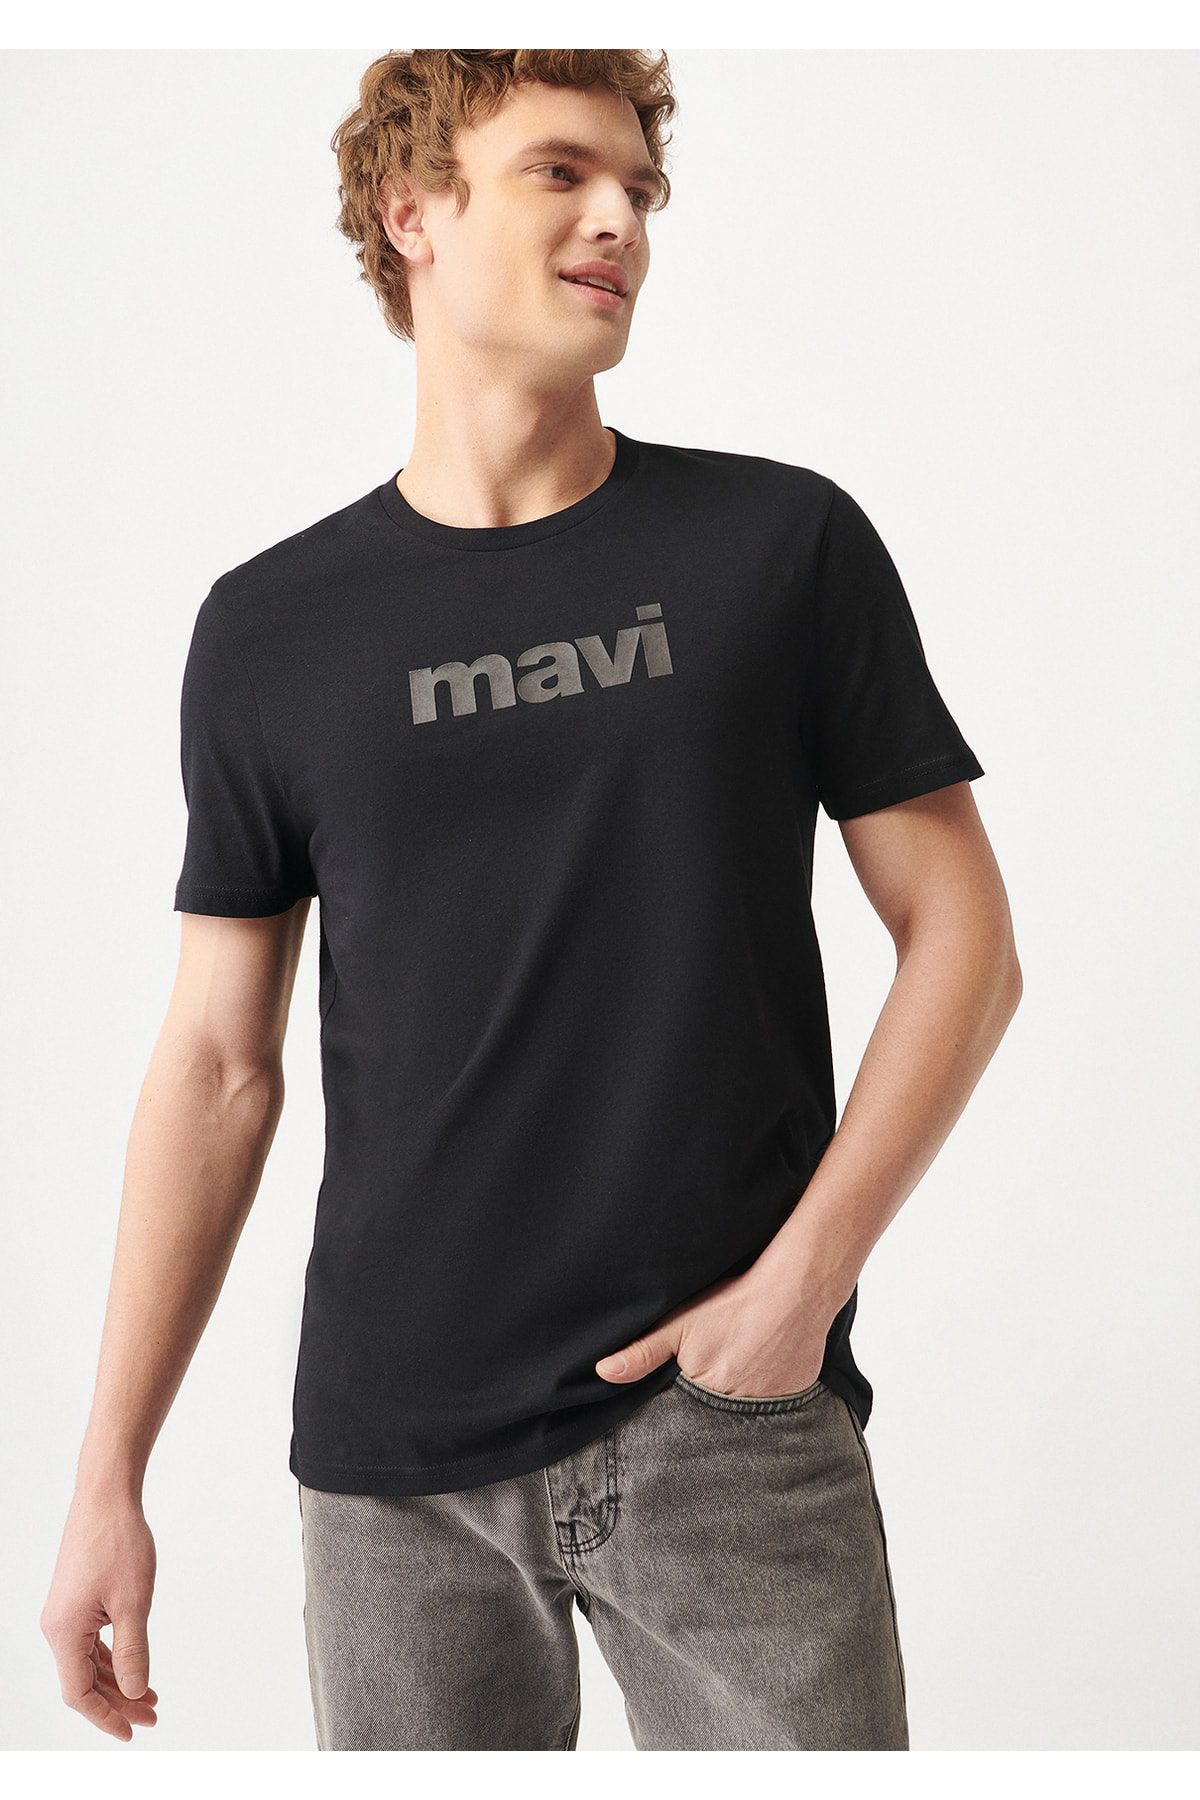 تی شرت آستین کوتاه مردانه ماوی مدل Logo Printed کد 065199-900